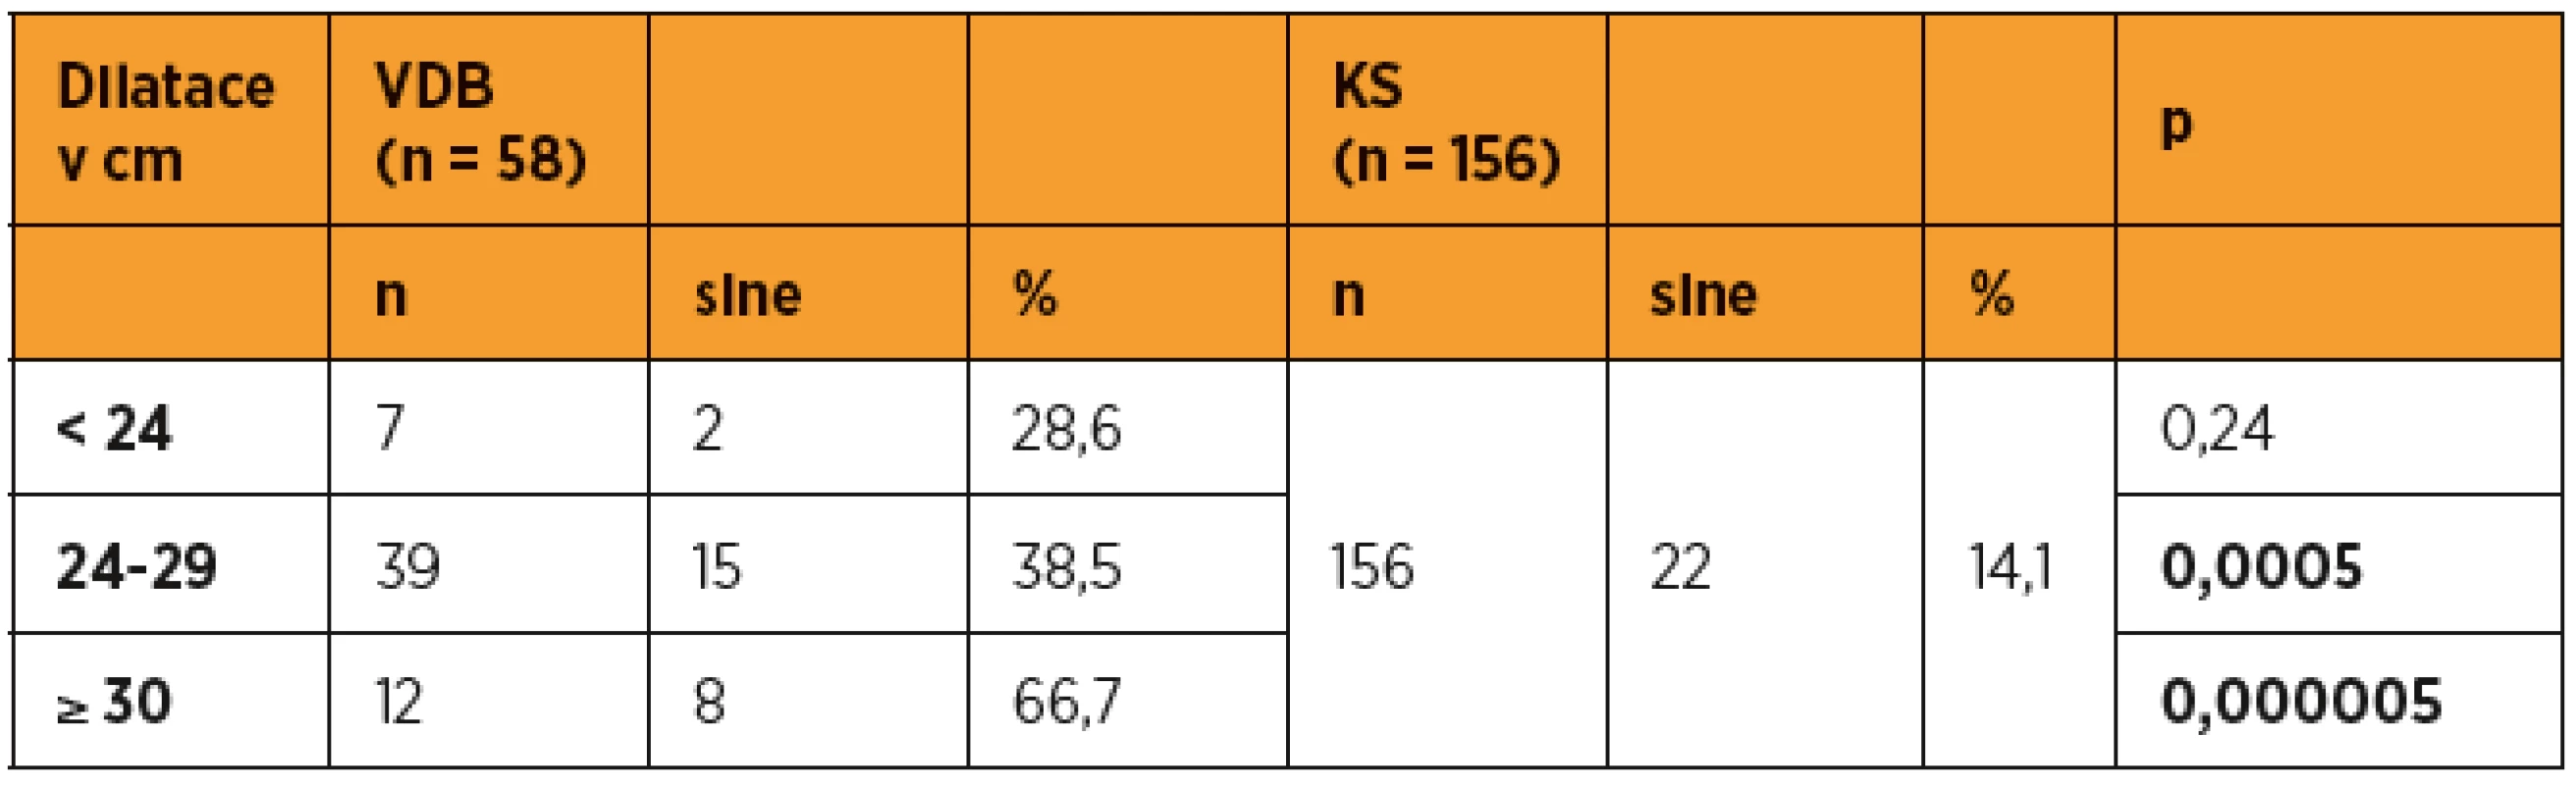 Stupeň dilatace ve skupině VDB, porovnáváno proti KS